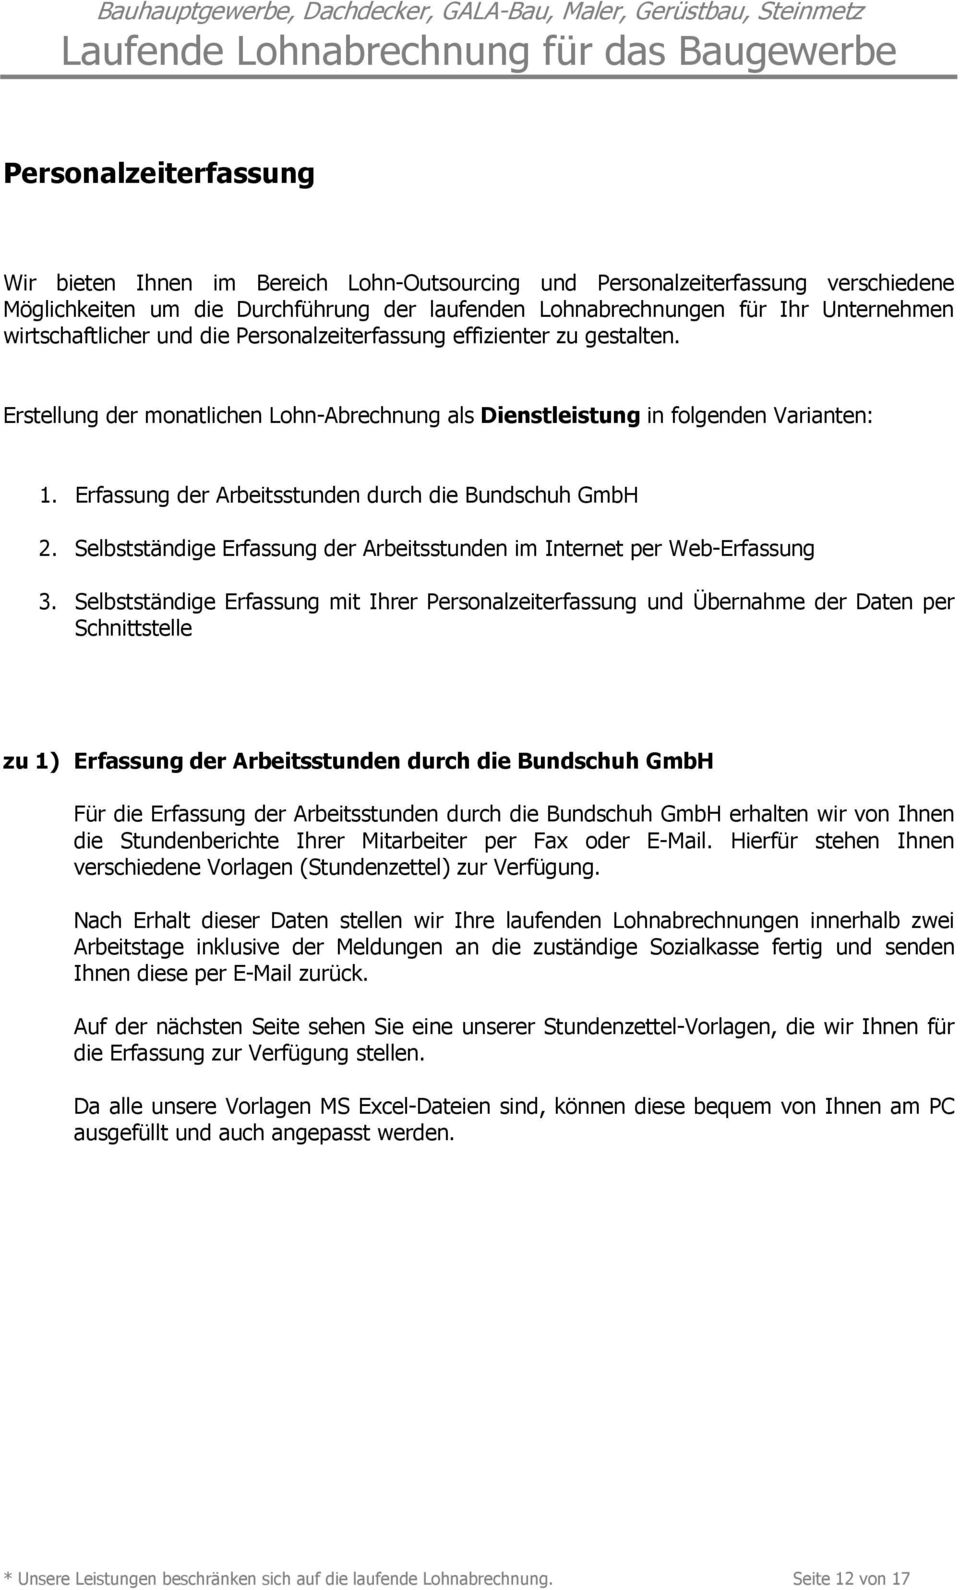 Erfassung der Arbeitsstunden durch die Bundschuh GmbH 2. Selbstständige Erfassung der Arbeitsstunden im Internet per Web-Erfassung 3.